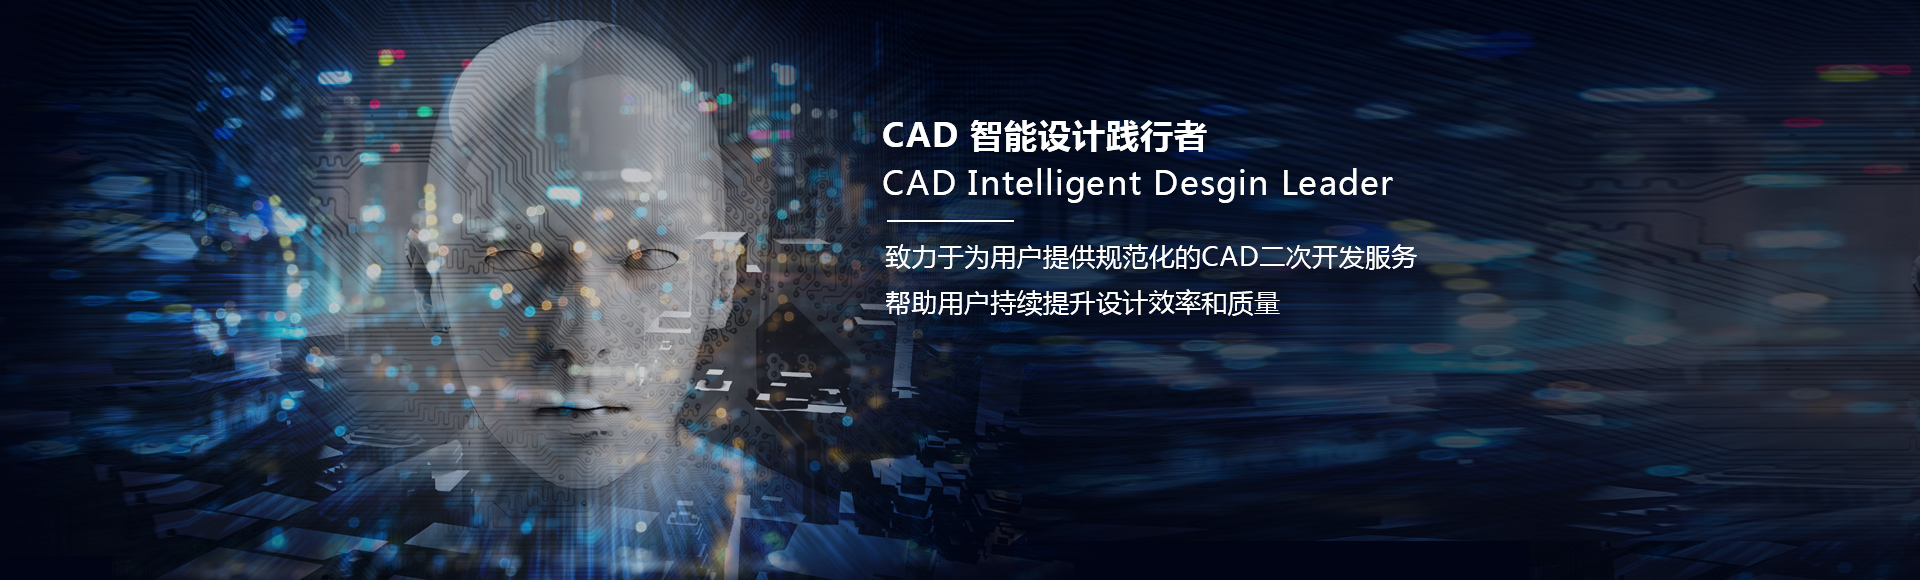 CAD智能设计践行者